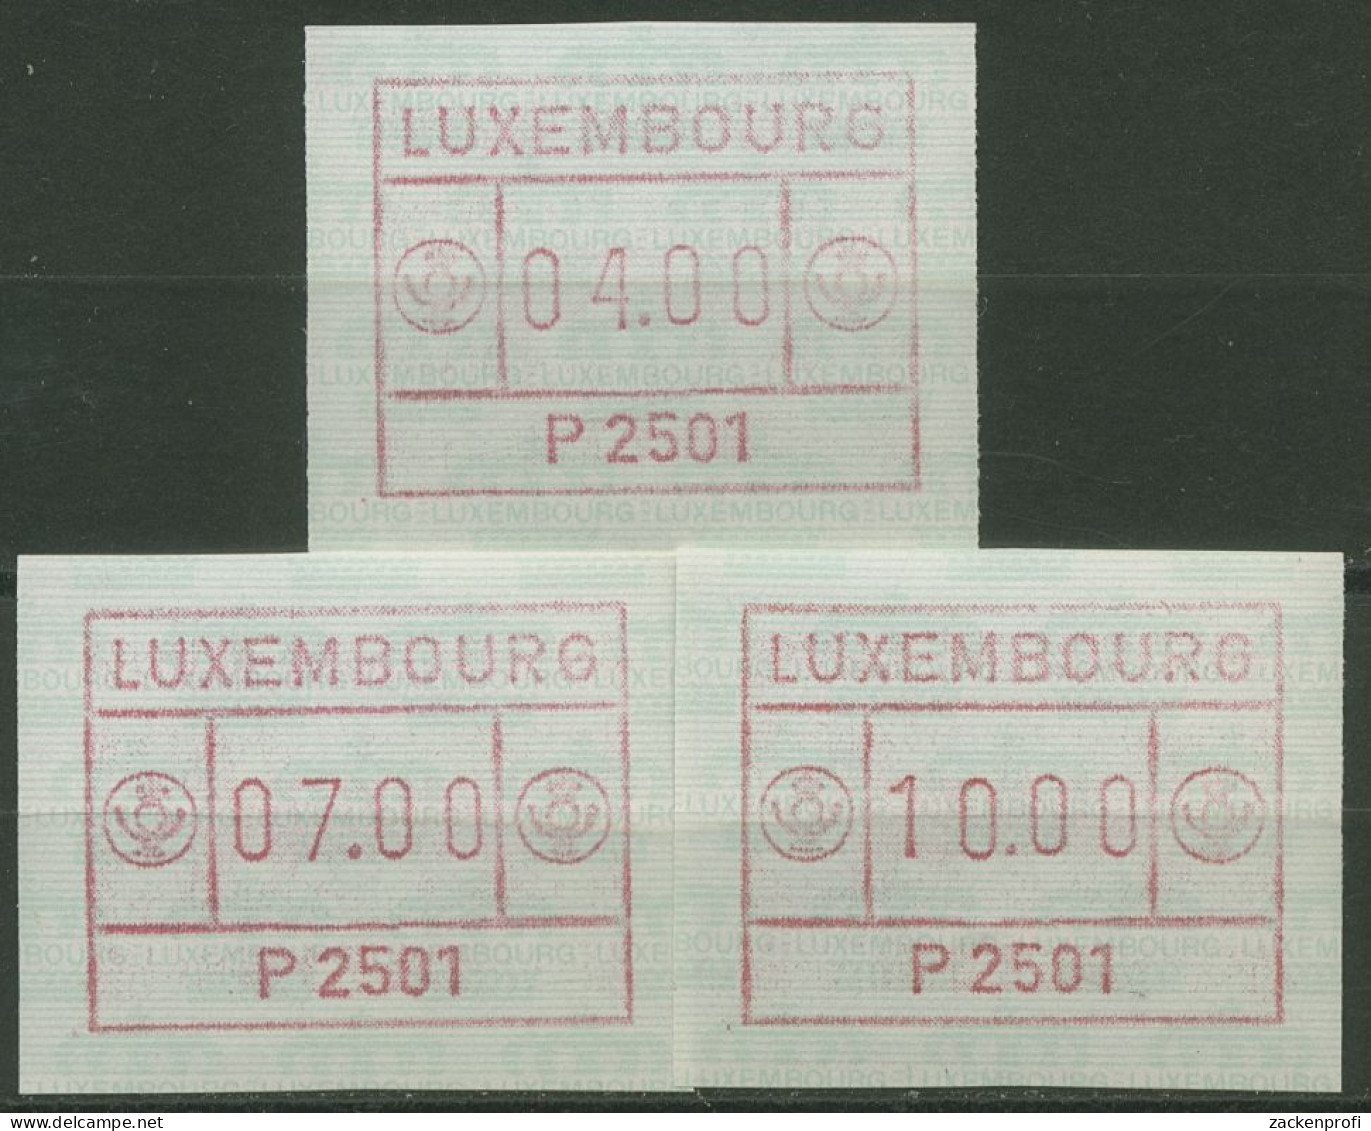 Luxemburg 1983 Automatenmarke Automat P 2501 Satz 1.1.1 B S1 Postfrisch - Vignette